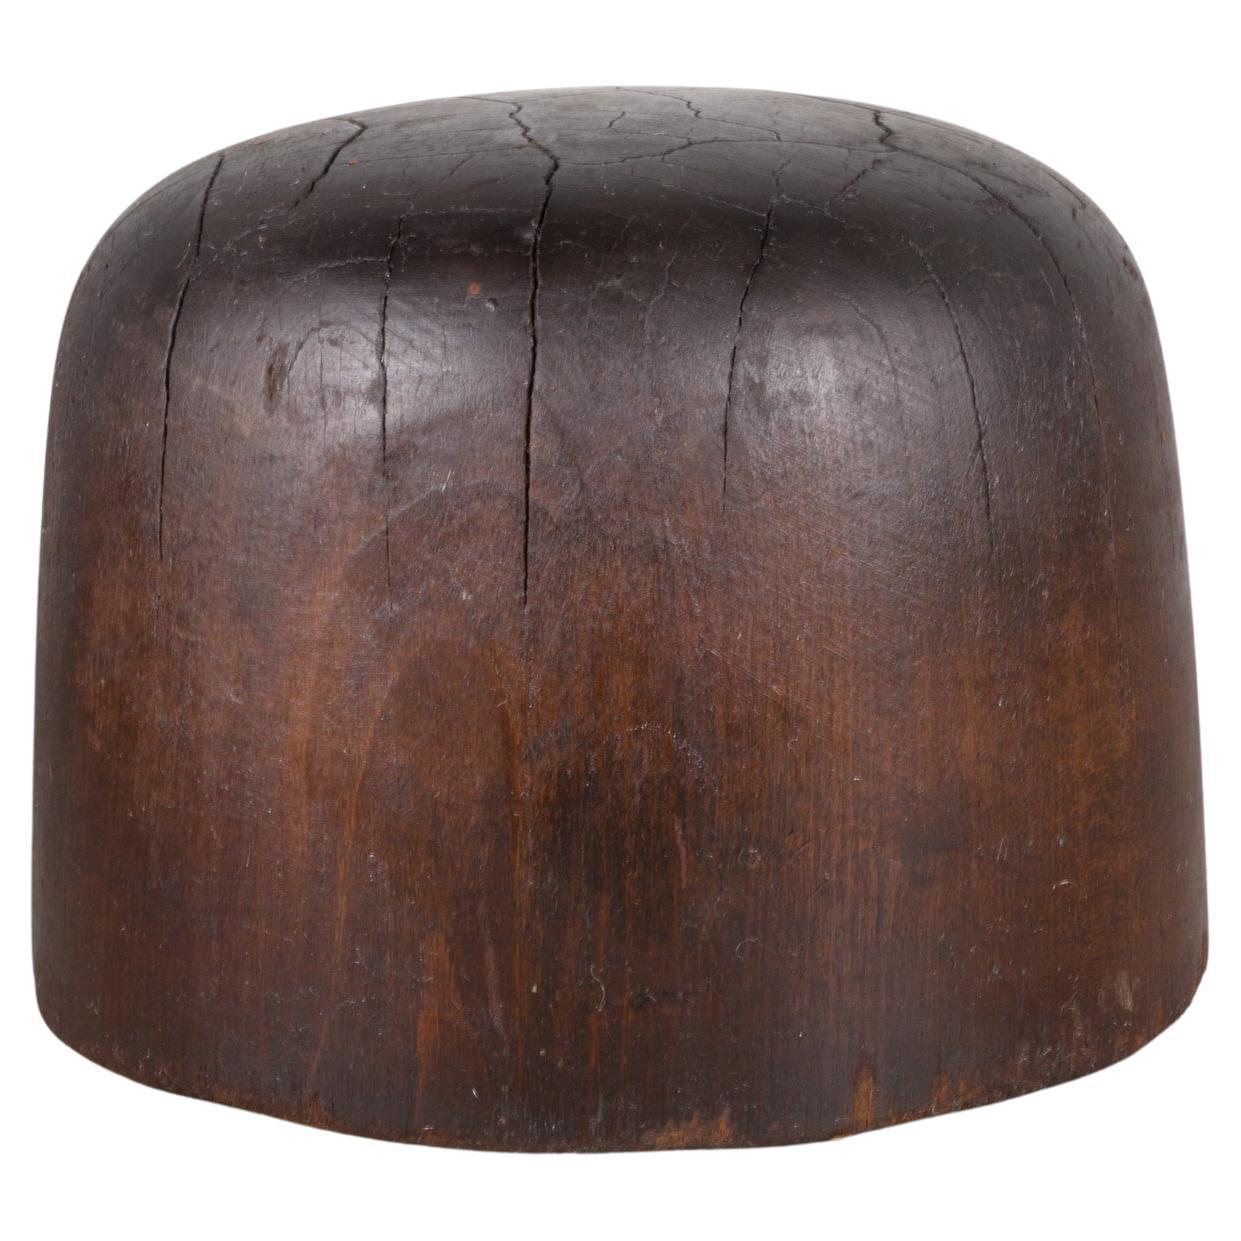  Antique Millinery Hat Form c.1890-1920